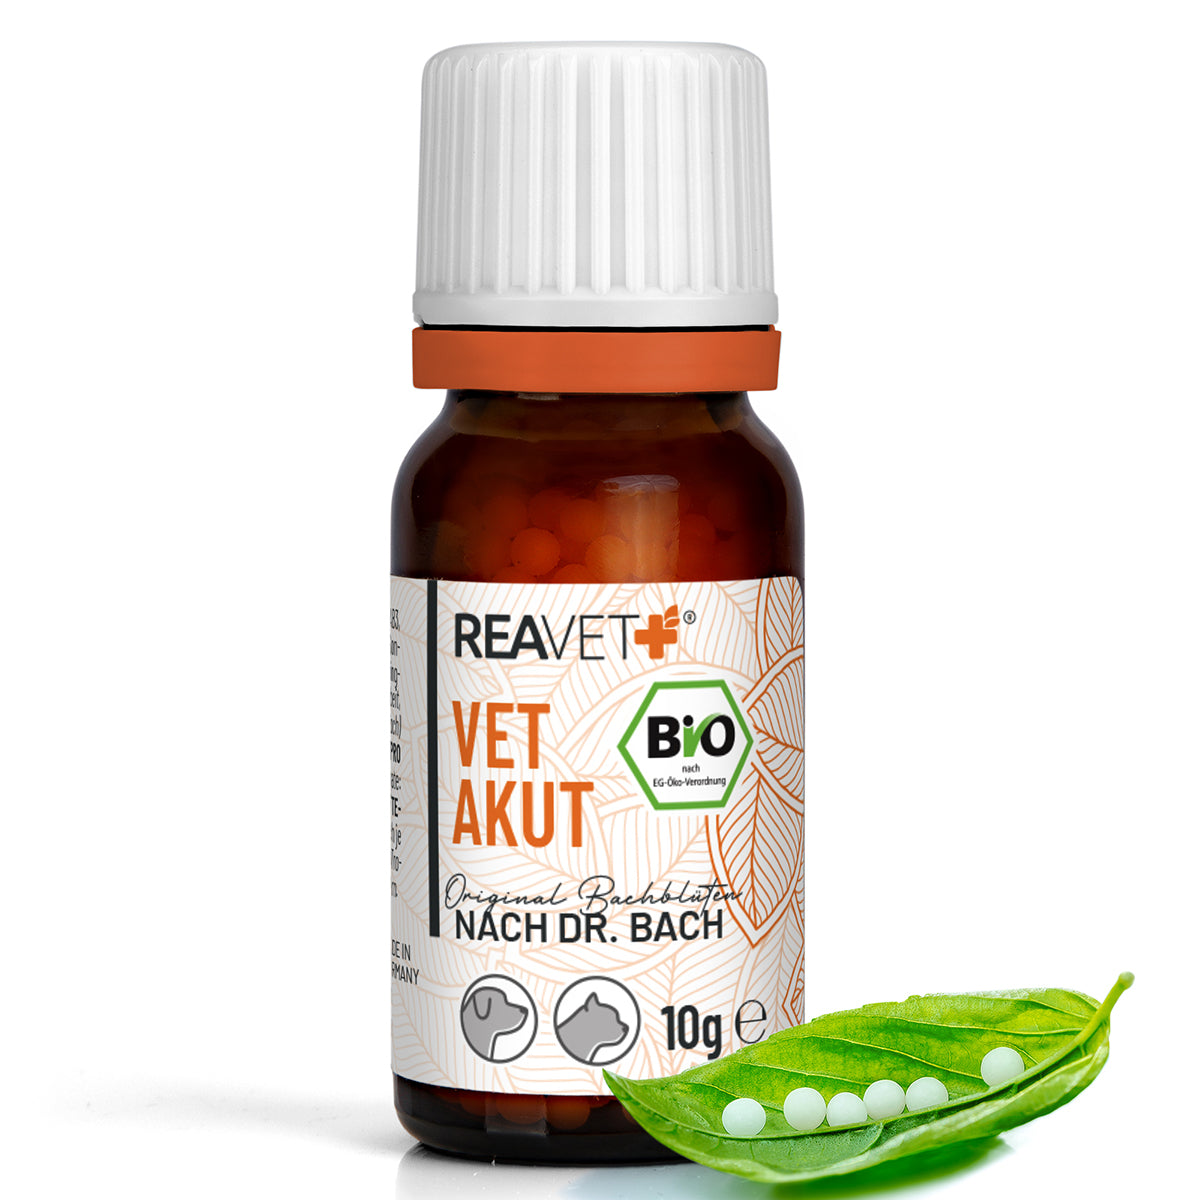 ReaVet-Bio-Bachblüten-Vet-Akut